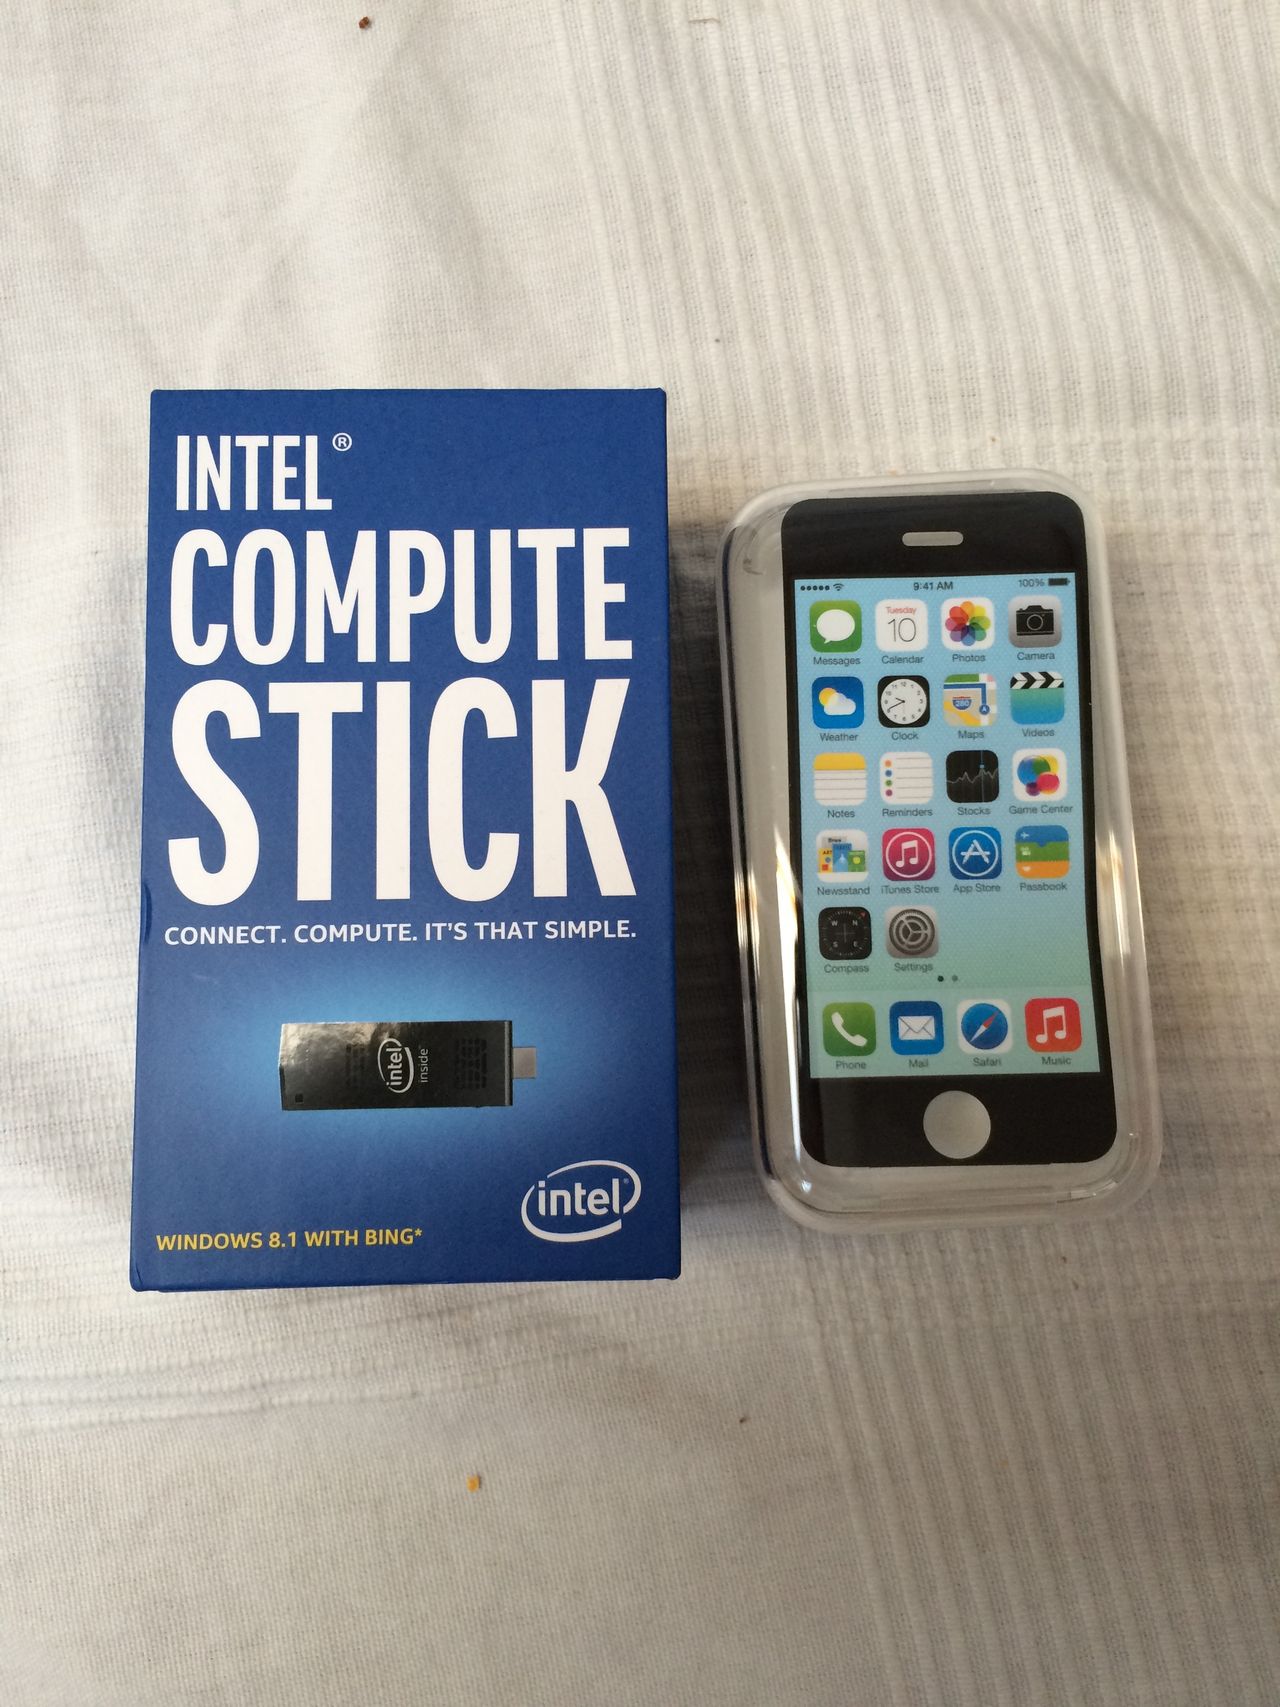 Pudełko zawierające Intel Compute Stick jest niewiele większe od pudełek w jakich kupujemy smartfony.